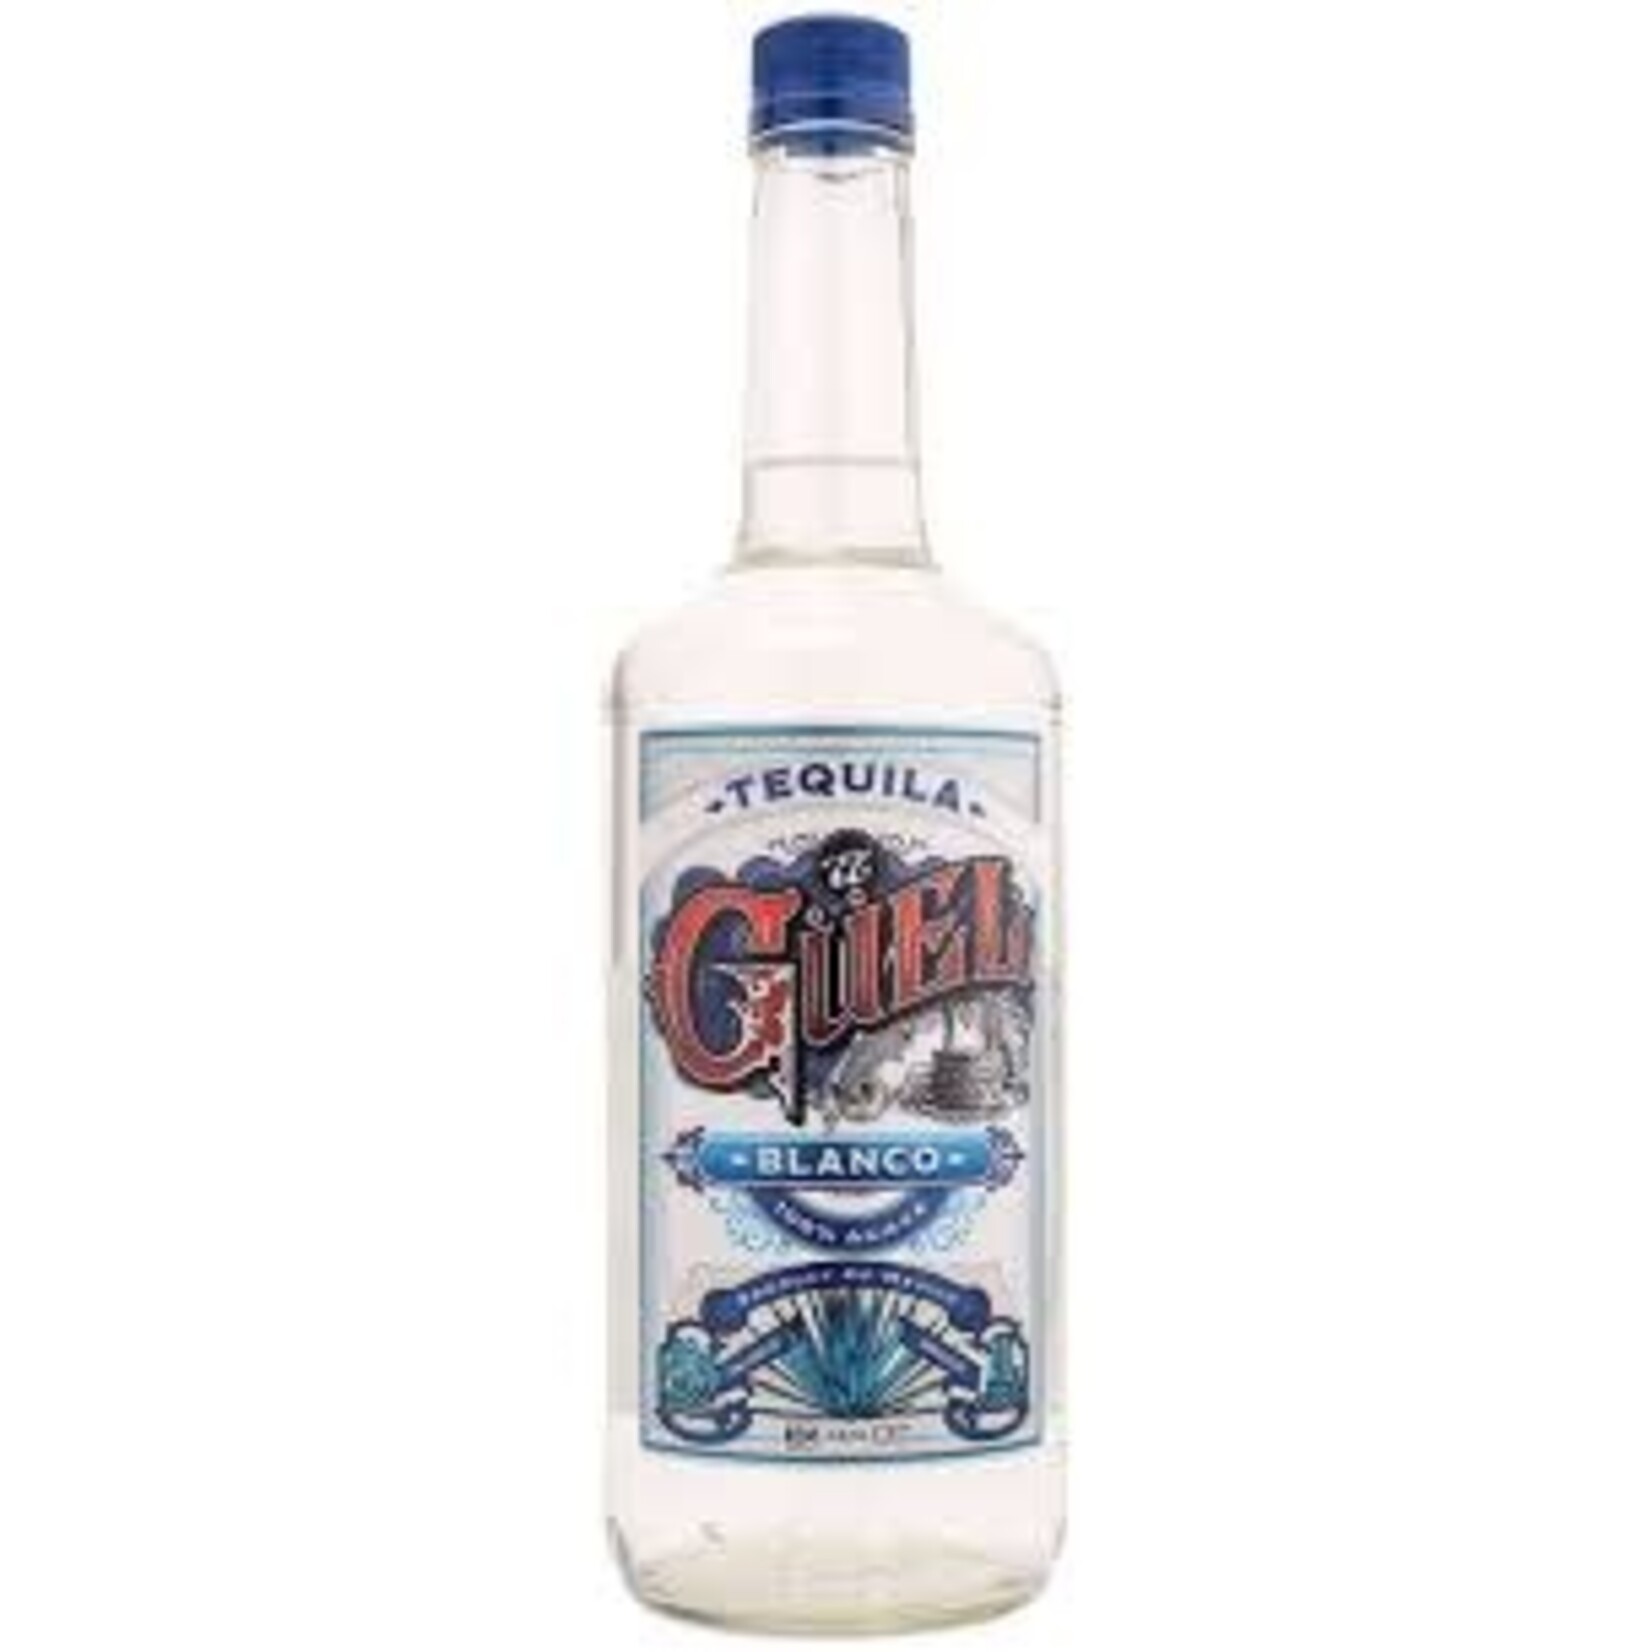 El Guel Blanco Tequila 100% Agave Azul